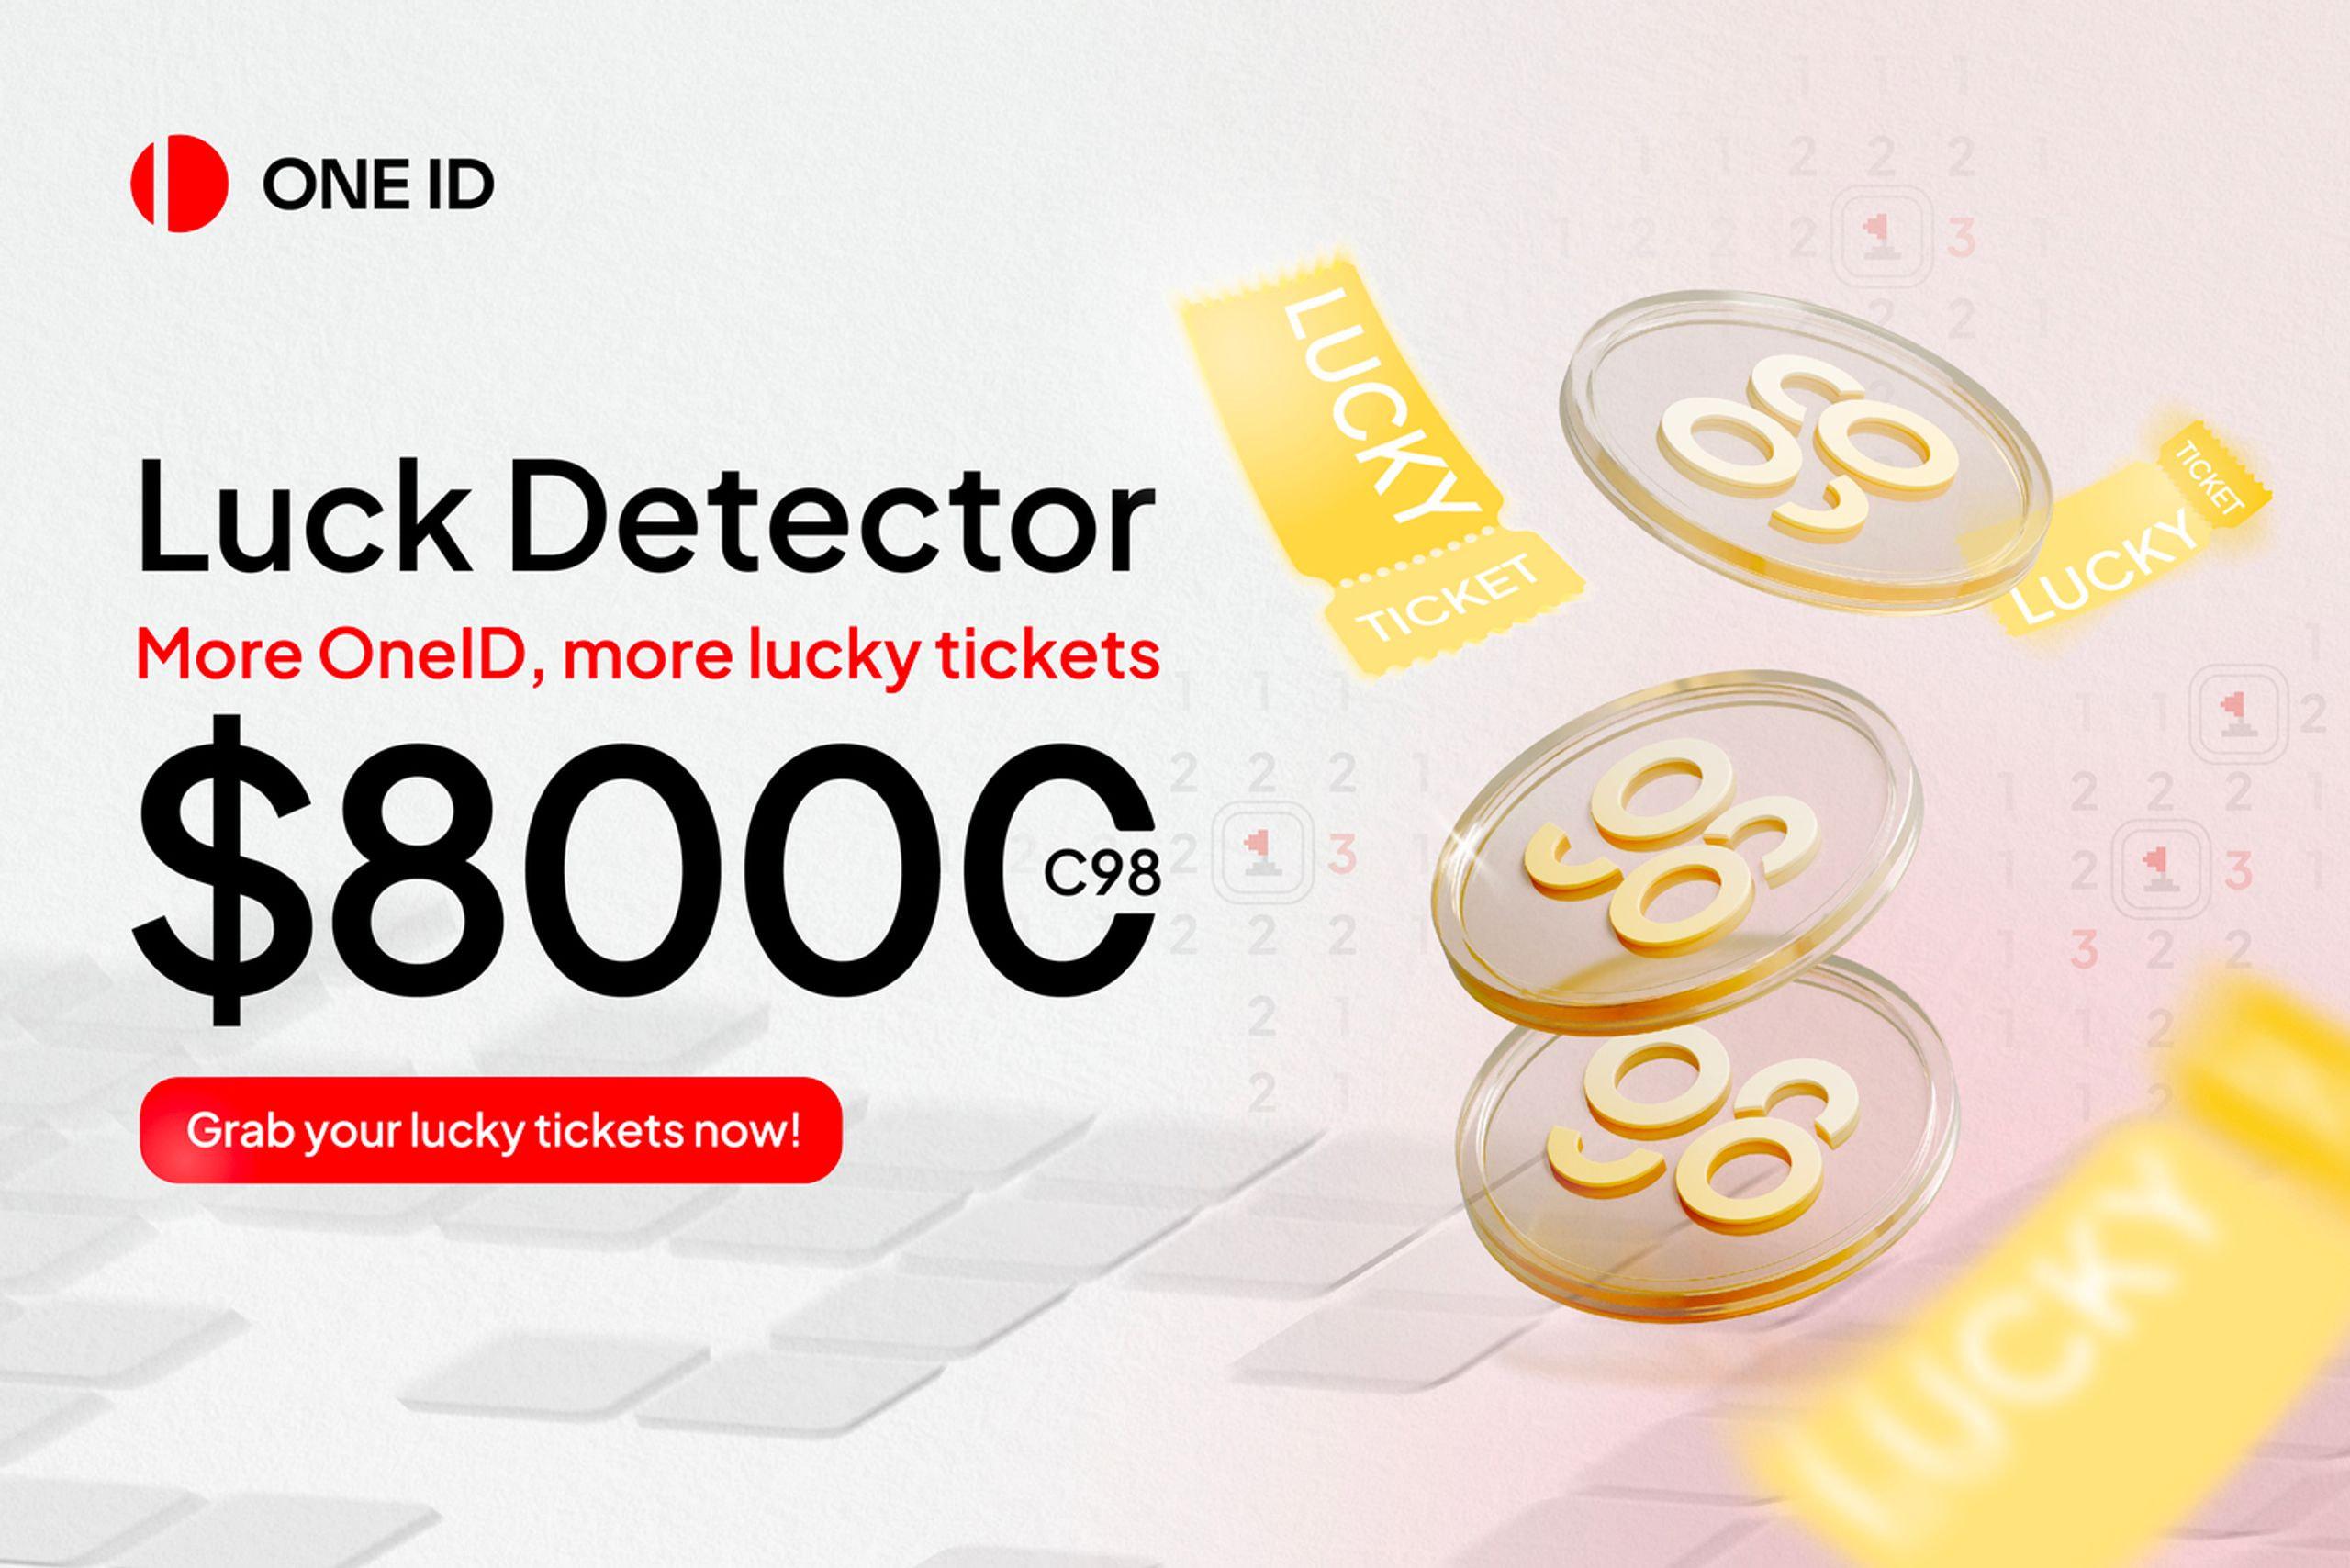 “LUCK DETECTOR”: LUCKY TICKETS WORTH $8,000 AWAIT!